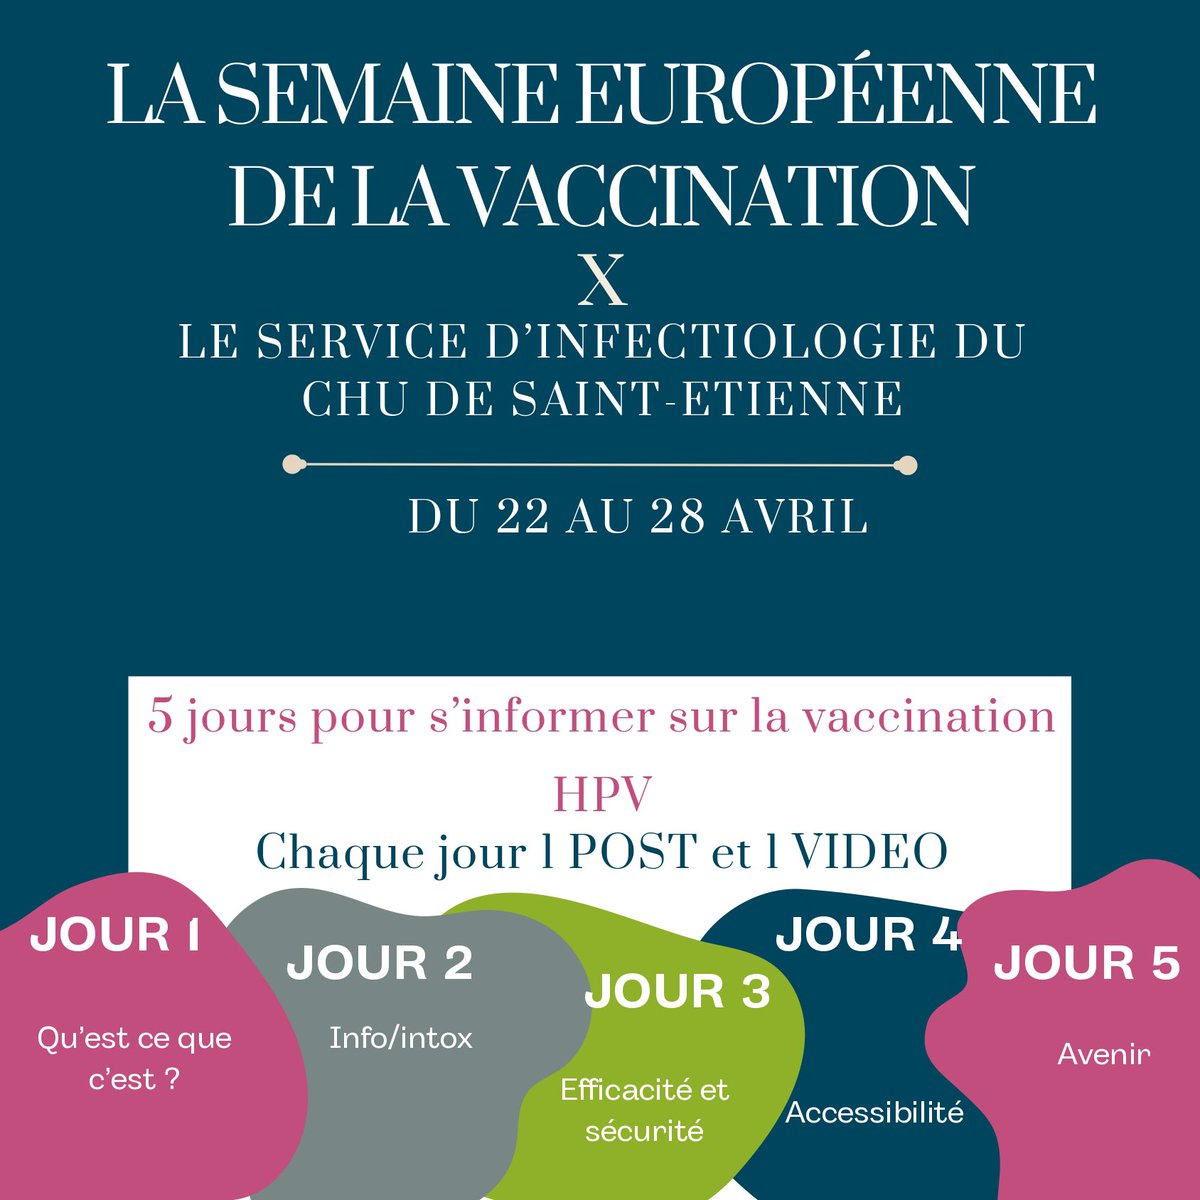 💡5 jours pour vous informer sur la vaccination HPV (papillomavirus)💡 📌 Pour la semaine européenne de la vaccination, le service @InfectiologieC vous propose chaque jour d’en savoir plus sur le HPV et la vaccination contre ce virus Restez connectés 👀